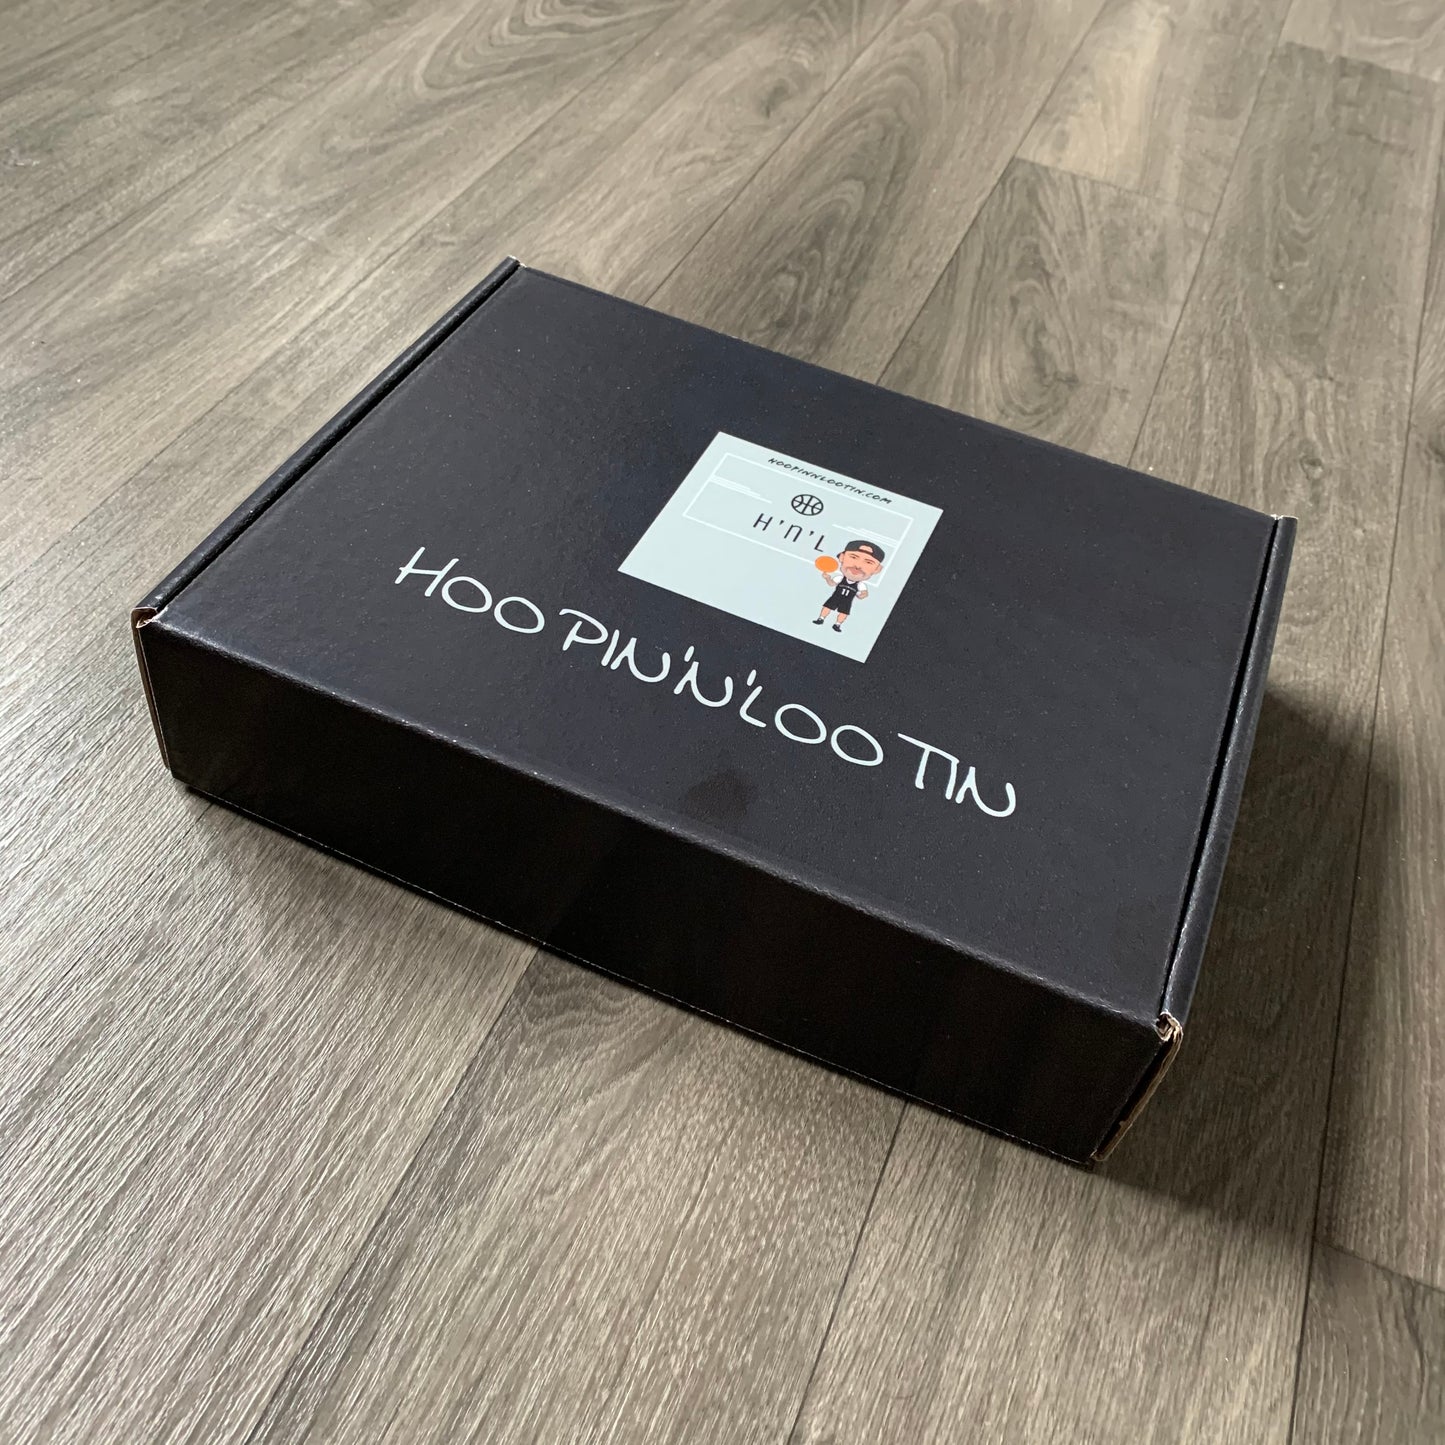 H’n’L Gift Box Packaging!